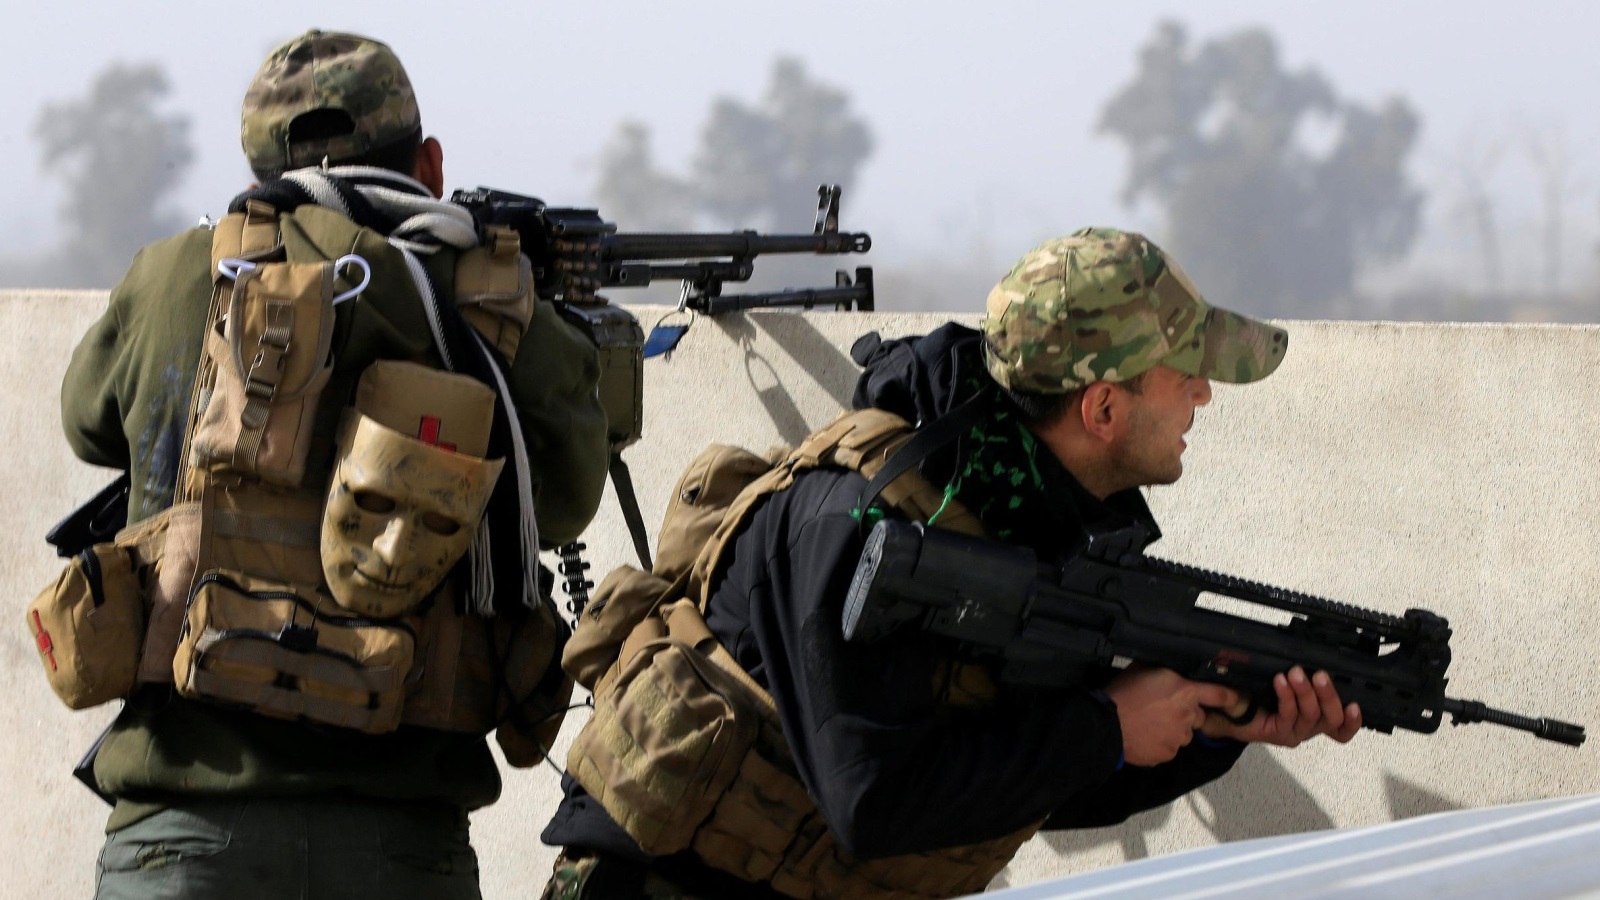 أفراد من قوات التدخل السريع العراقية يأخذون مواقعهم أثناء القتال مع تنظيم الدولة في الموصل (رويترز)